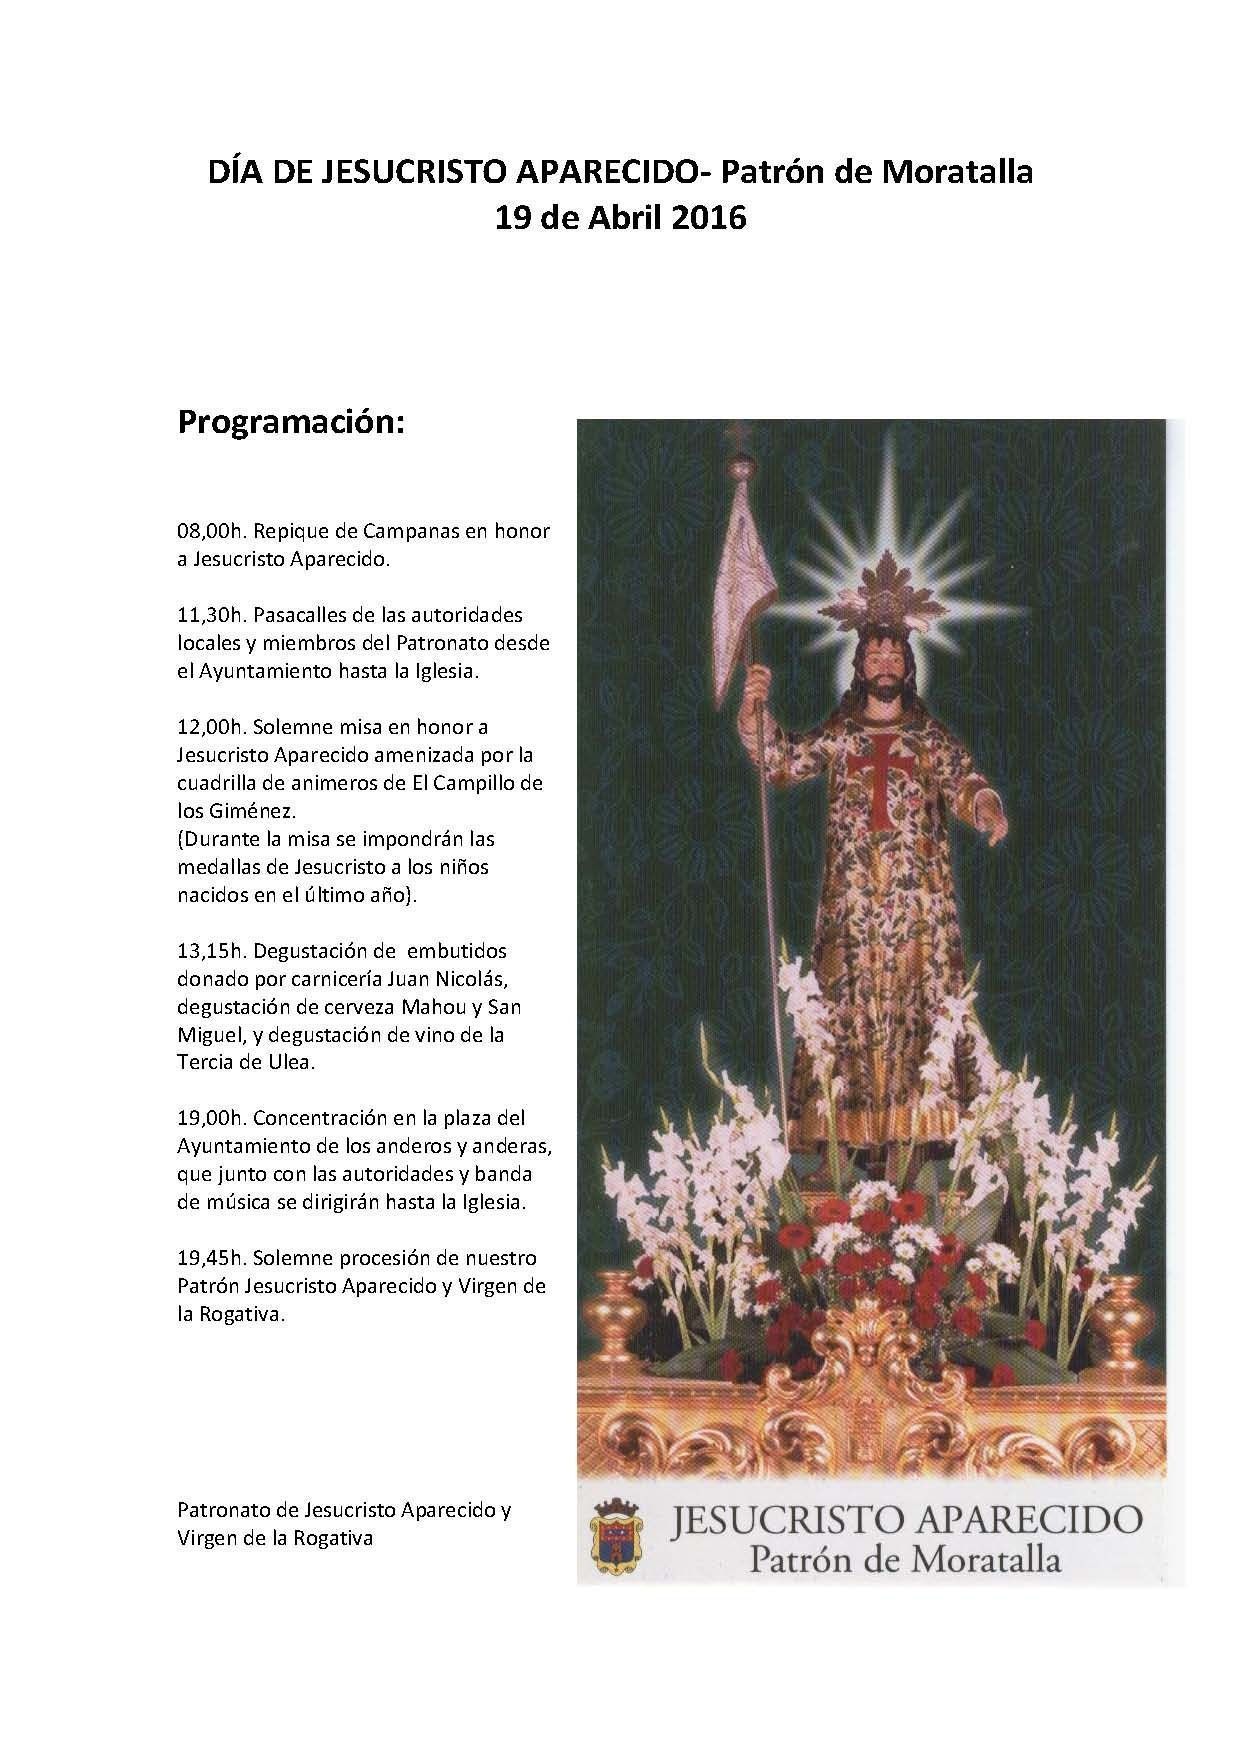 Fiesta el 19 para celebrar el día del patrón de Moratalla, Jesucristo Aparecido